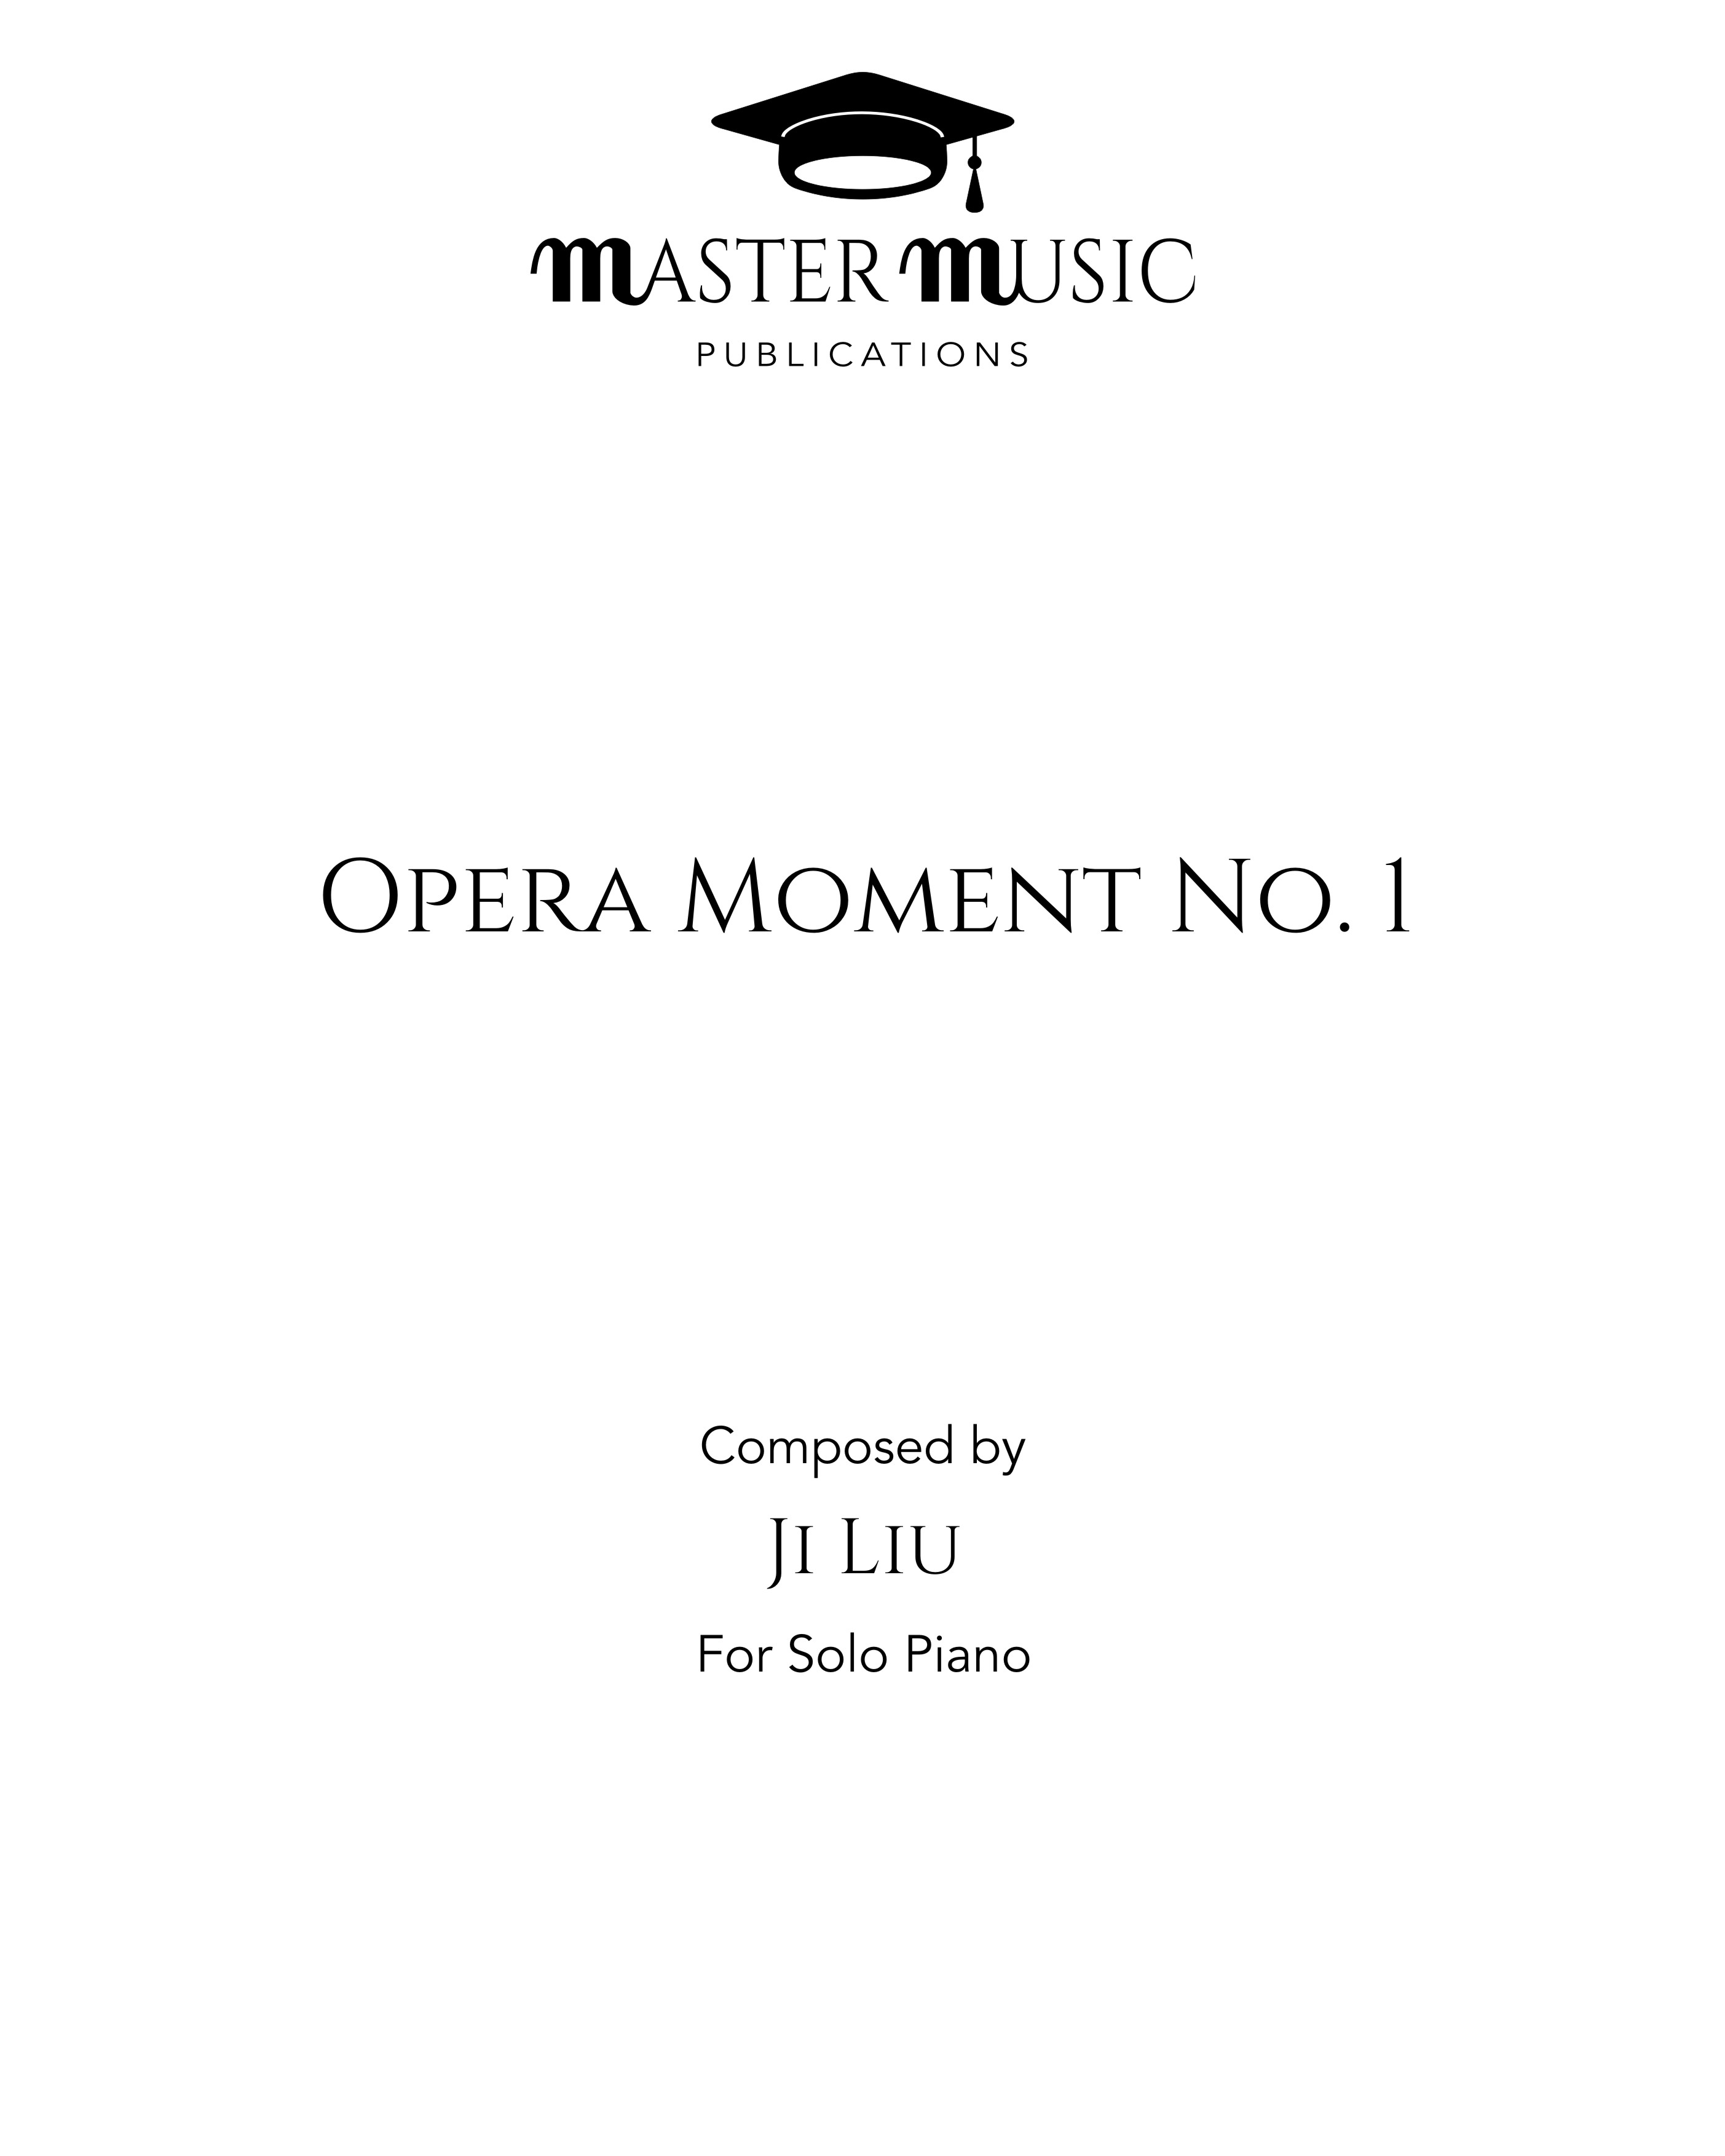 Opera Moment No. 1